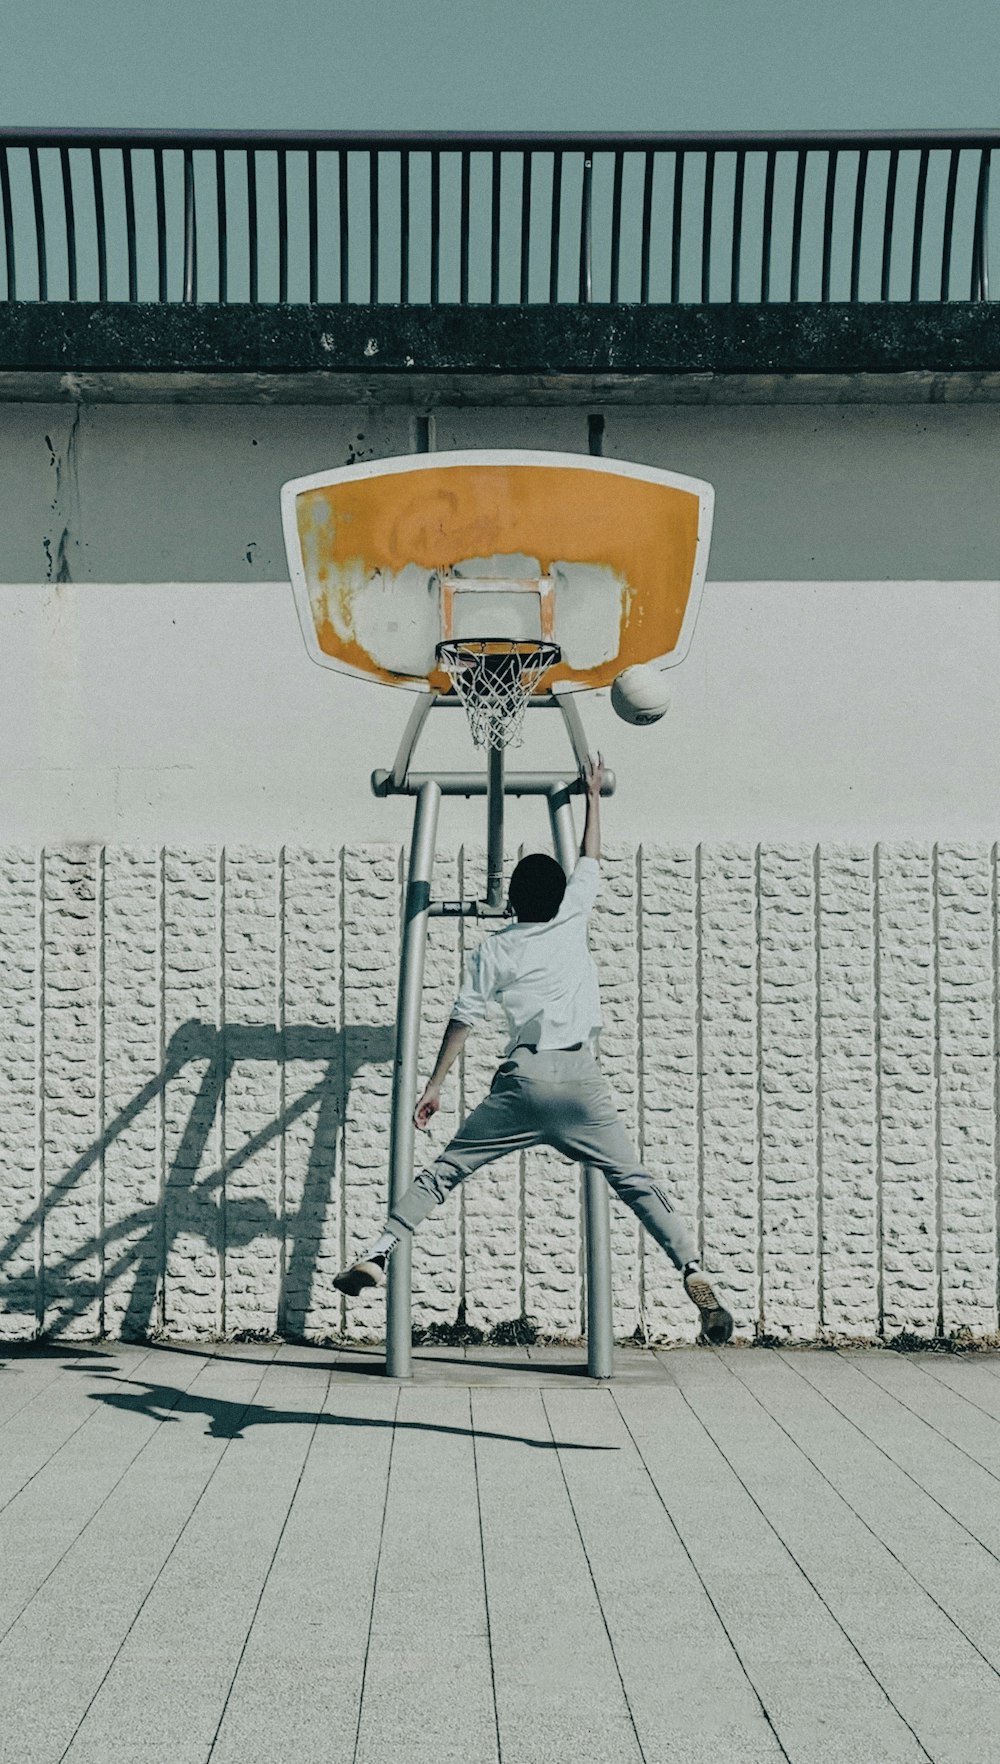 Un hombre está jugando baloncesto en un aro de baloncesto